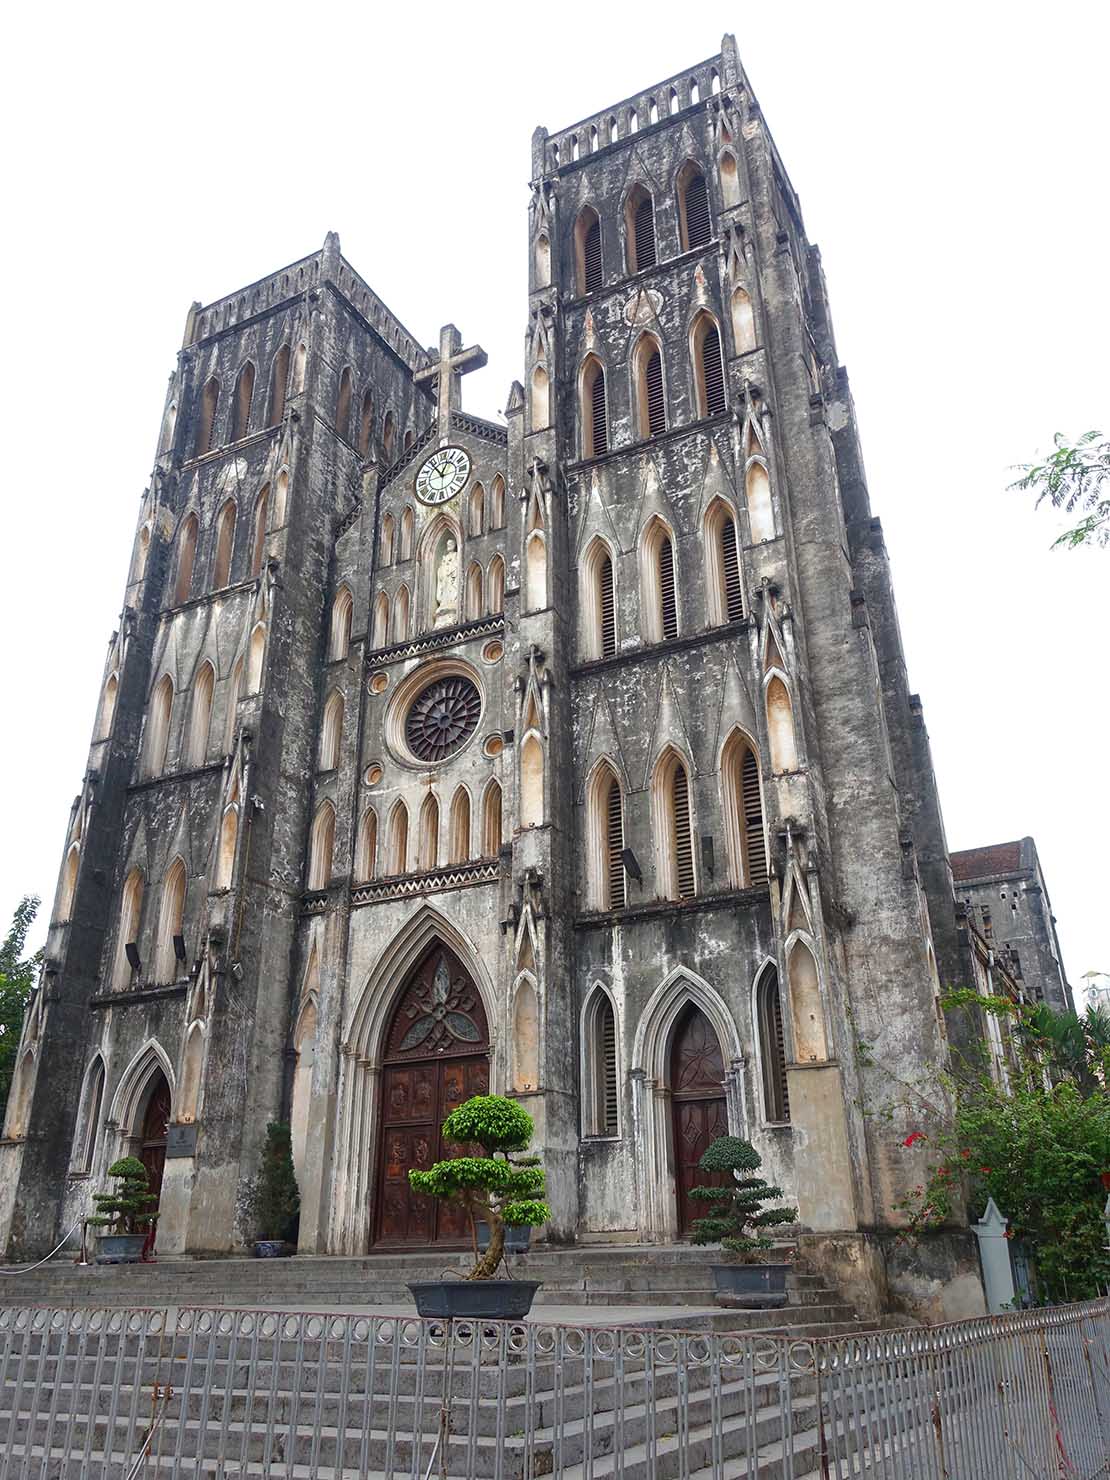 ベトナム・ハノイ旧市街の観光スポット「ハノイ大教会」の外観